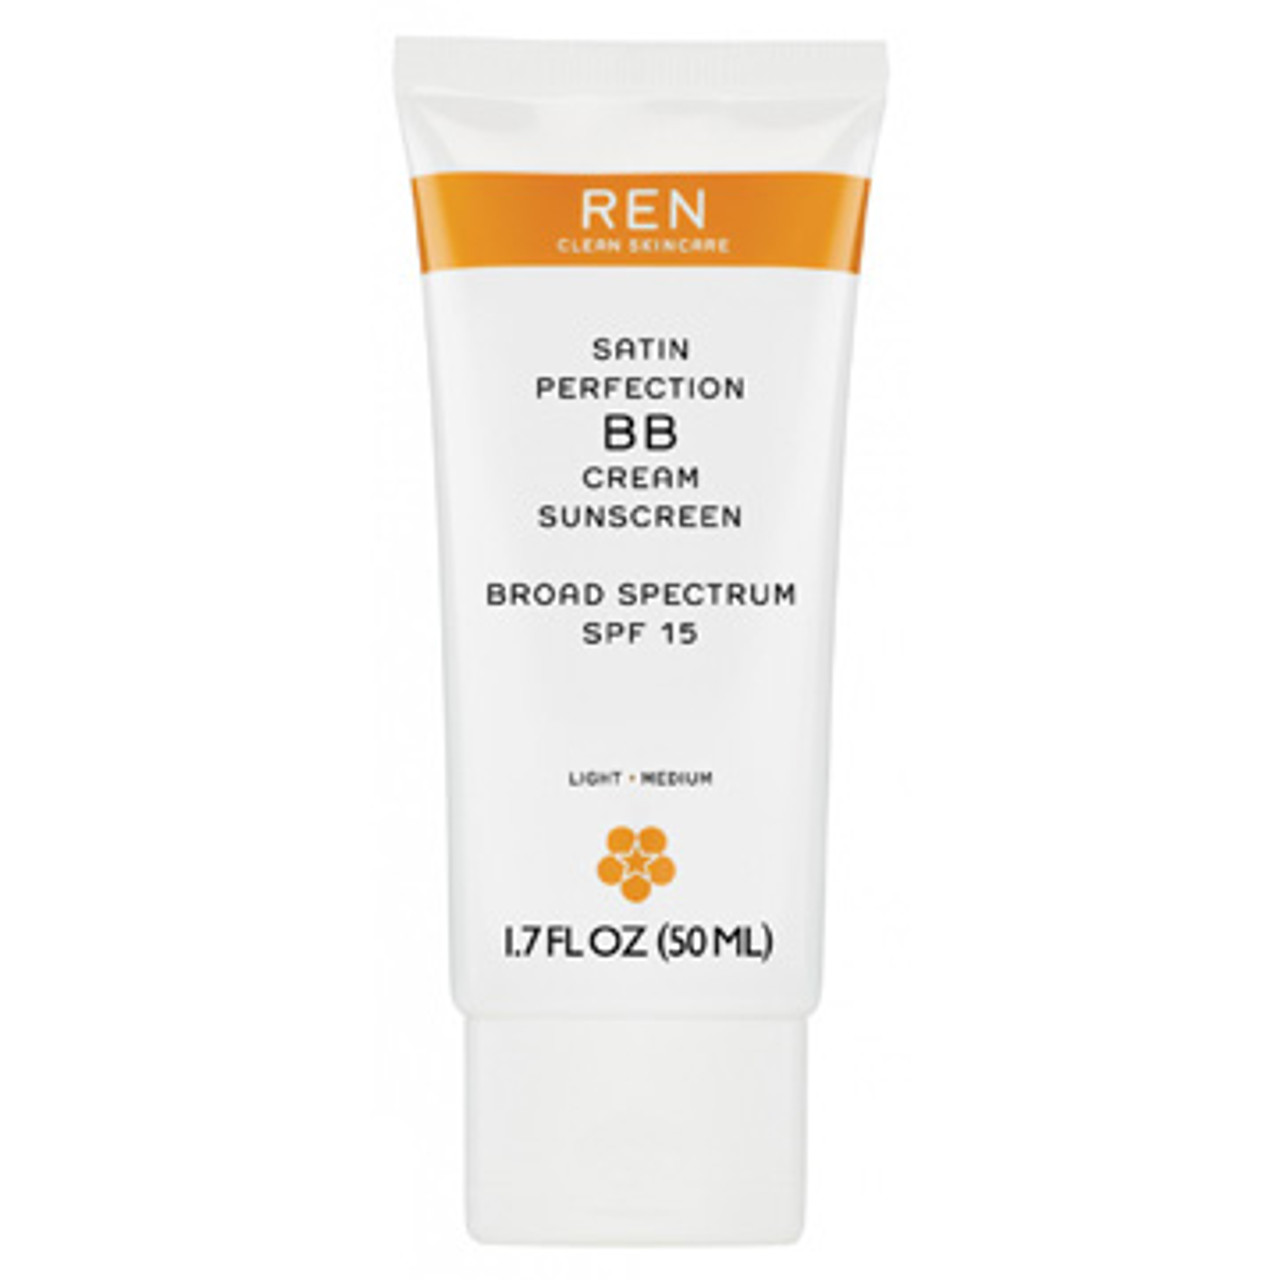 REN Radiance Satin Perfection BB Cream SPF 15 - 1.7 oz (3625)